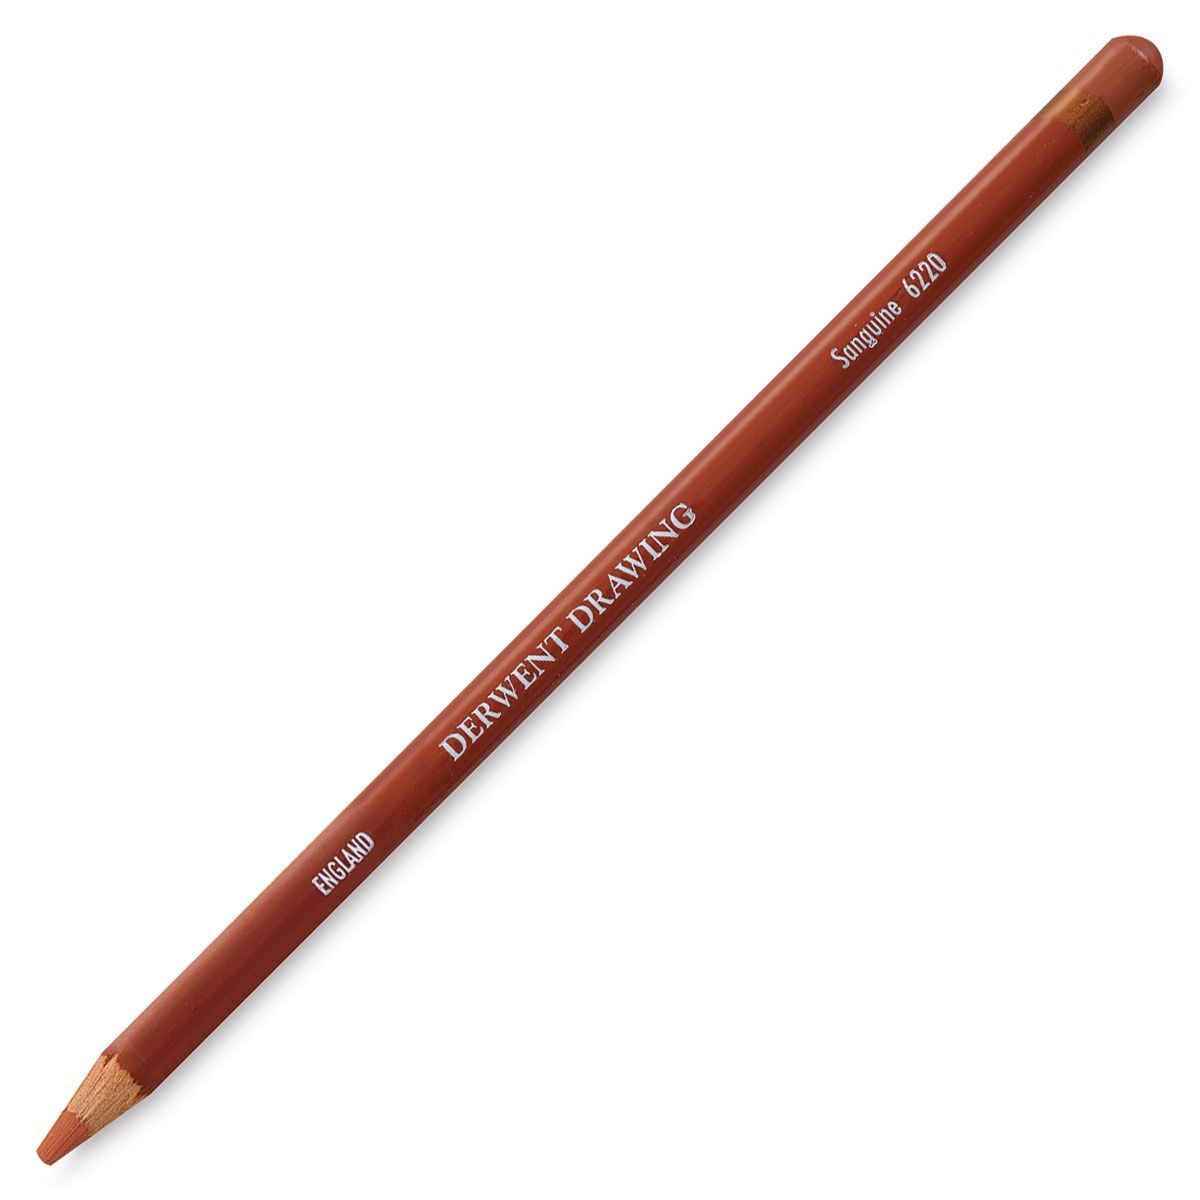 Derwent Drawing Pencil - Sanguine